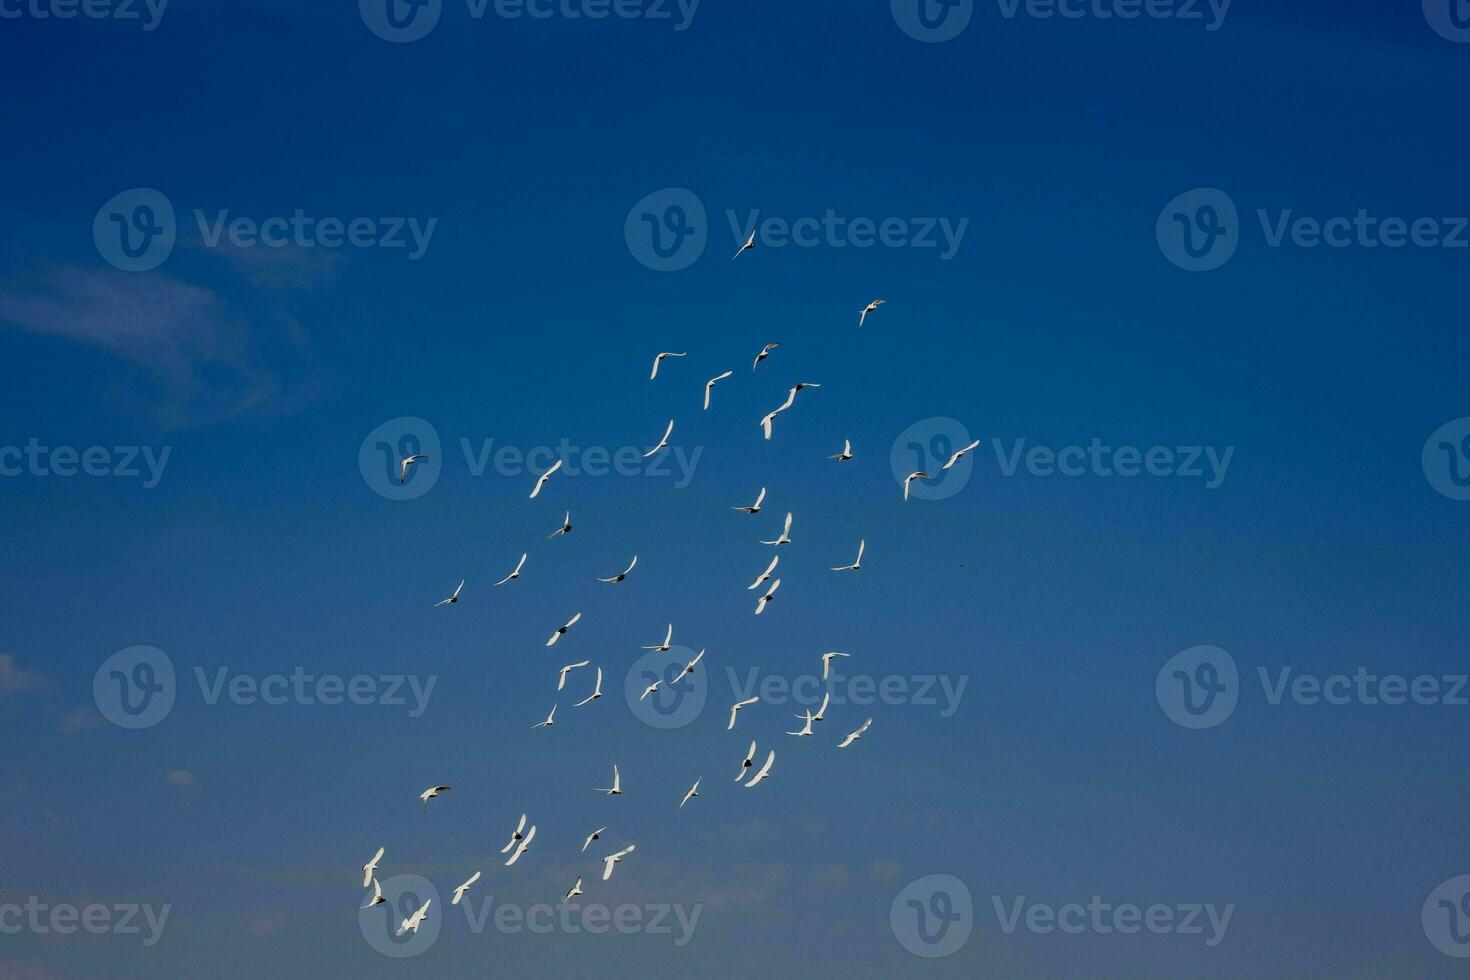 een kudde van wit vliegend duiven vliegend tegen zomer blauw lucht met wit wolken foto